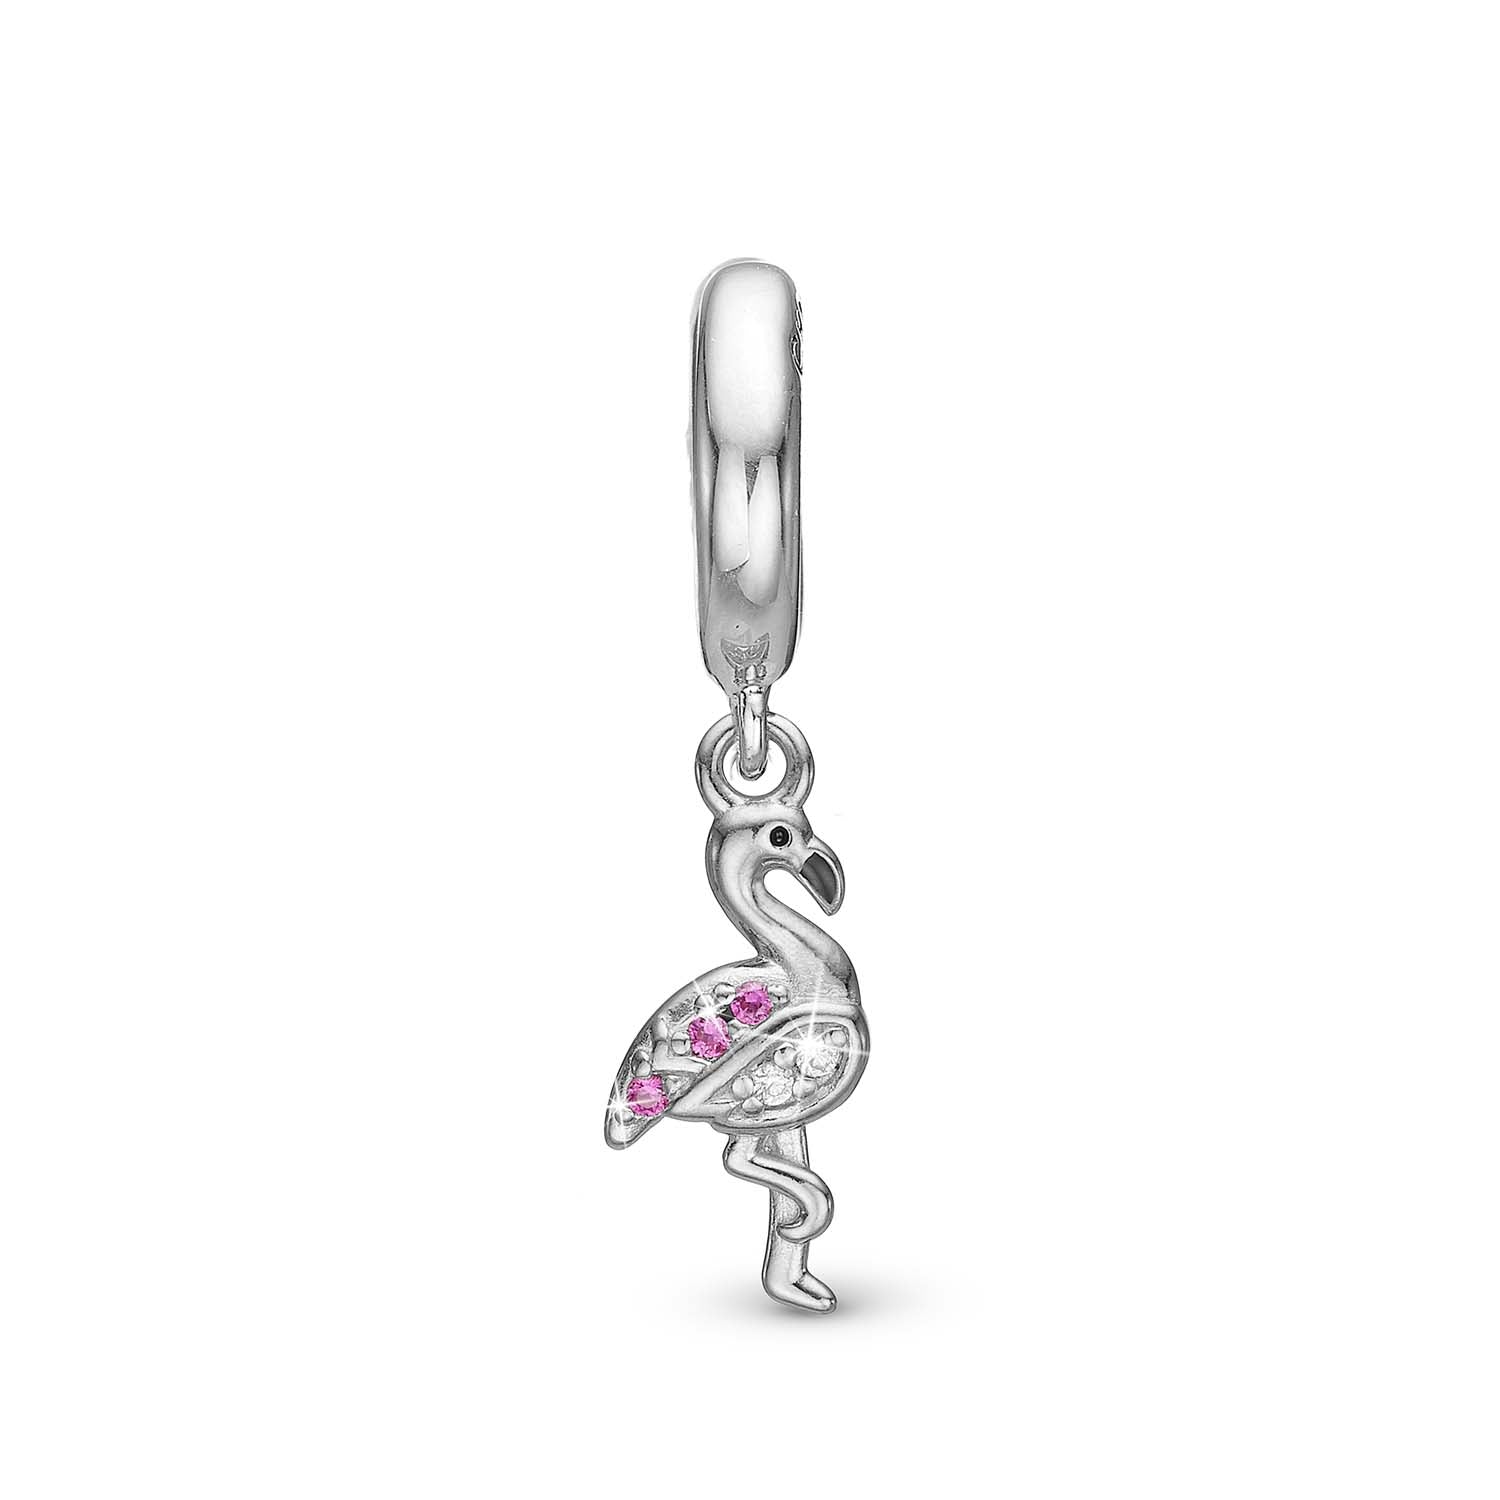 Billede af Christina Design London Jewelry & Watches - Flamingo charm sølv 6 mm. sterlingsølv